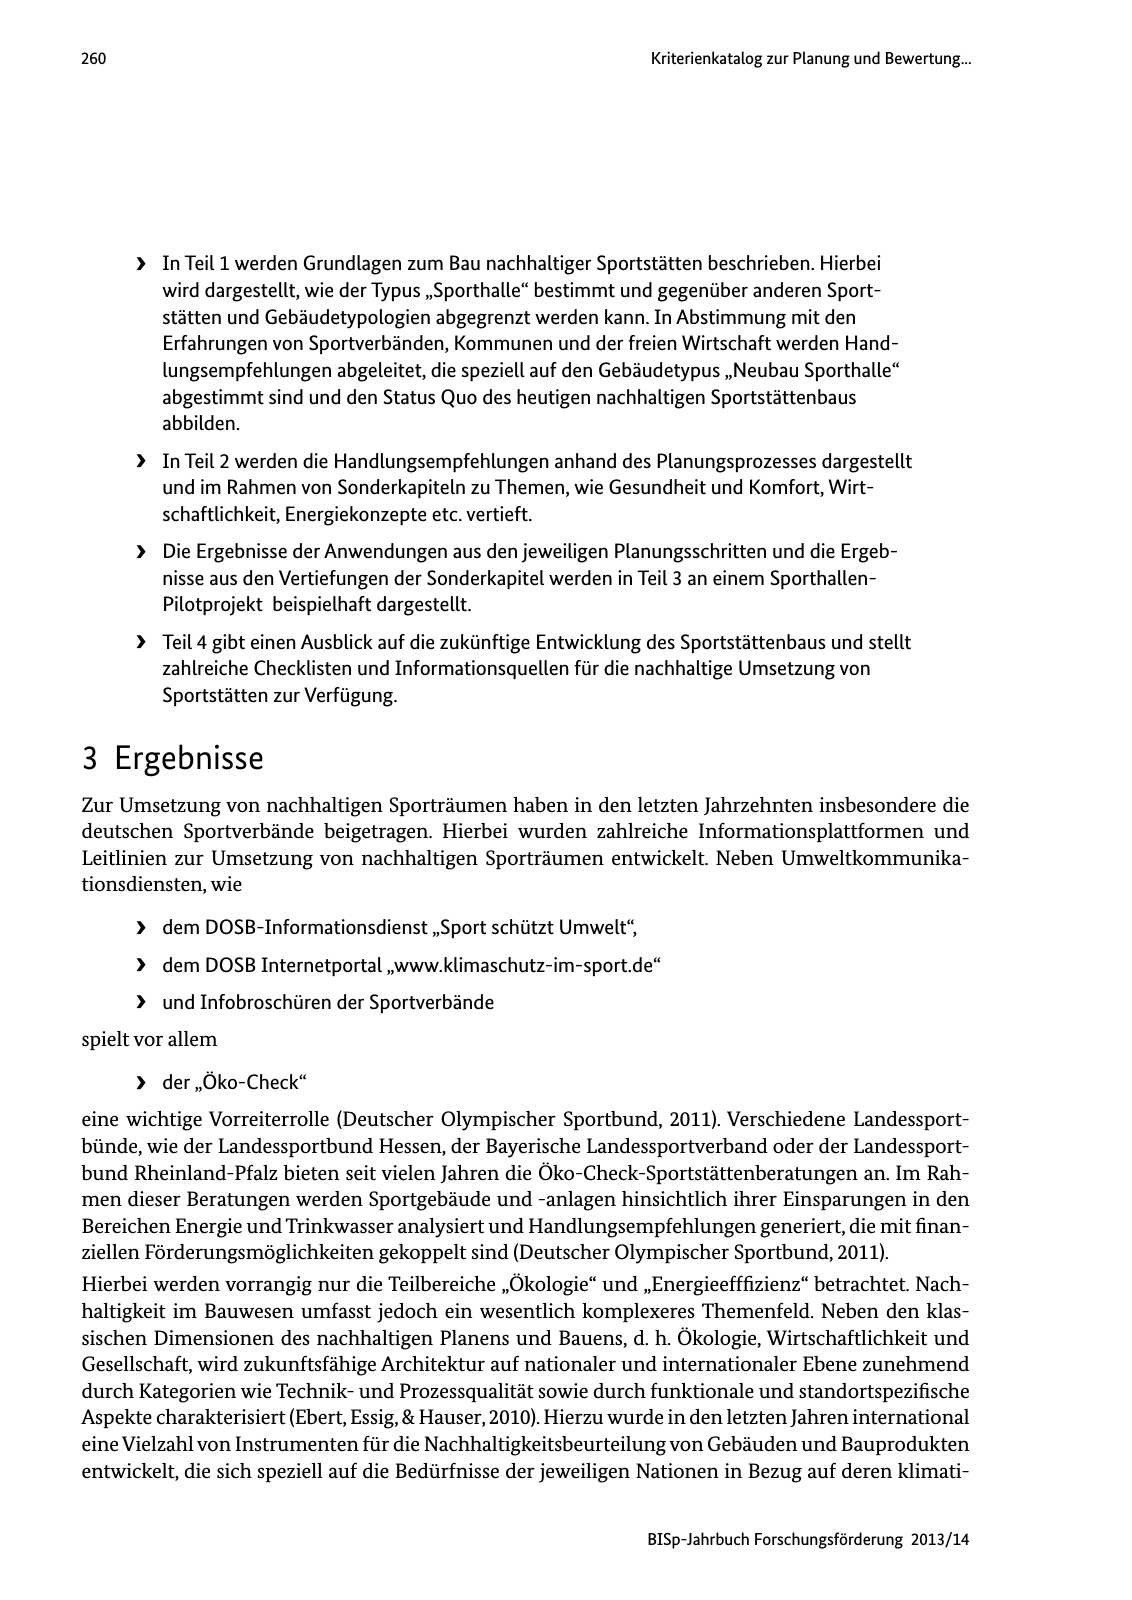 Vorschau BISp-Jahrbuch Forschungsförderung 2013/14 Seite 261